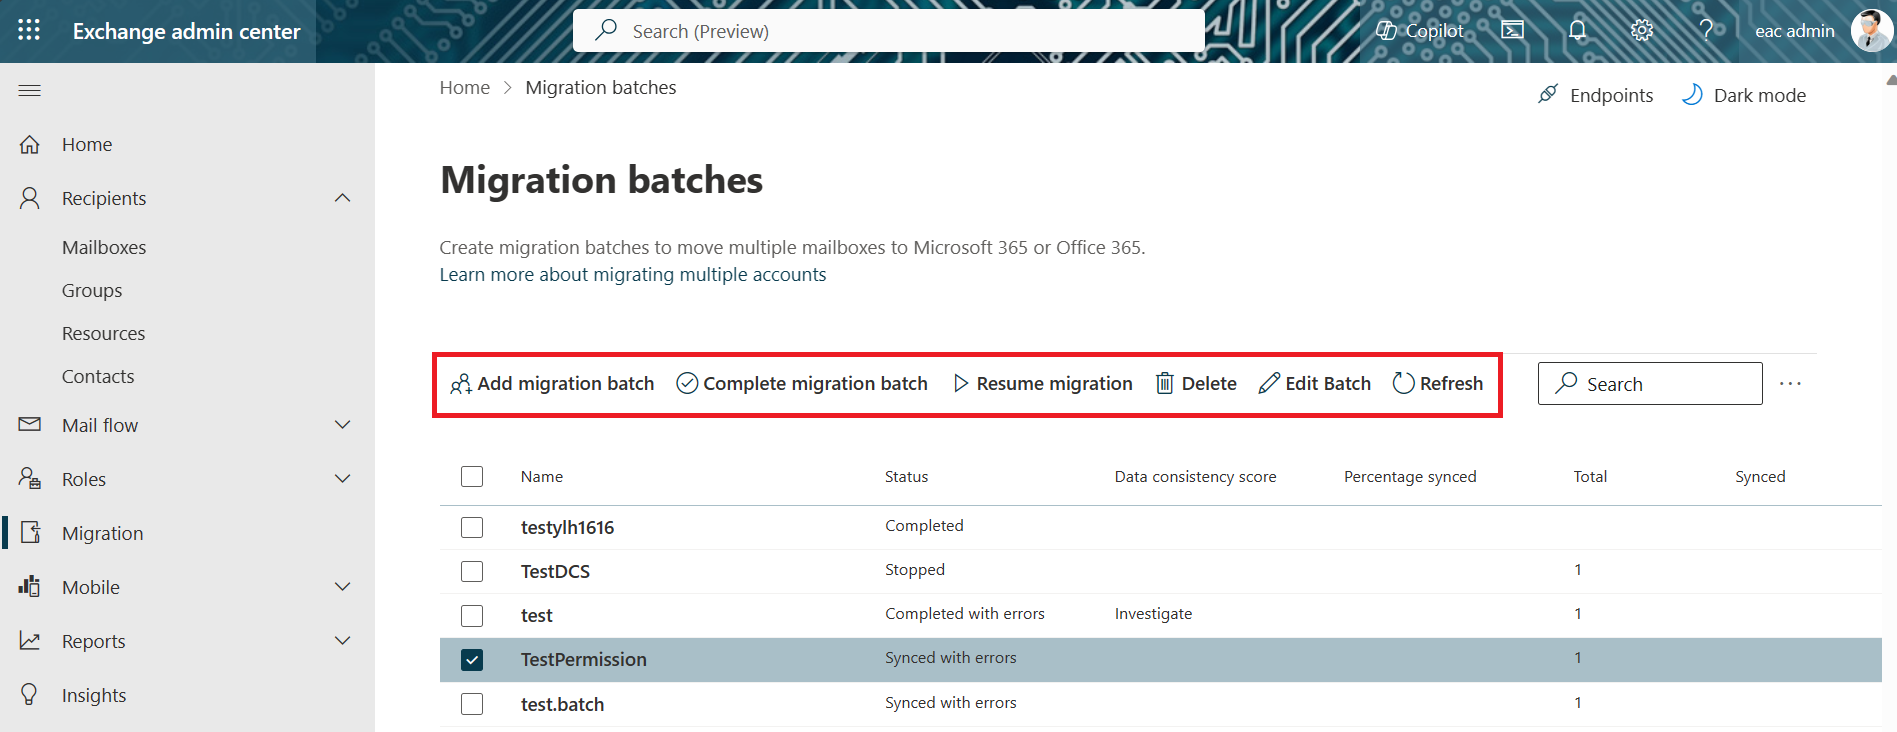 Capture d’écran de la page Des lots de migration sur eacl, avec les boutons de barre d’outils mis en évidence.